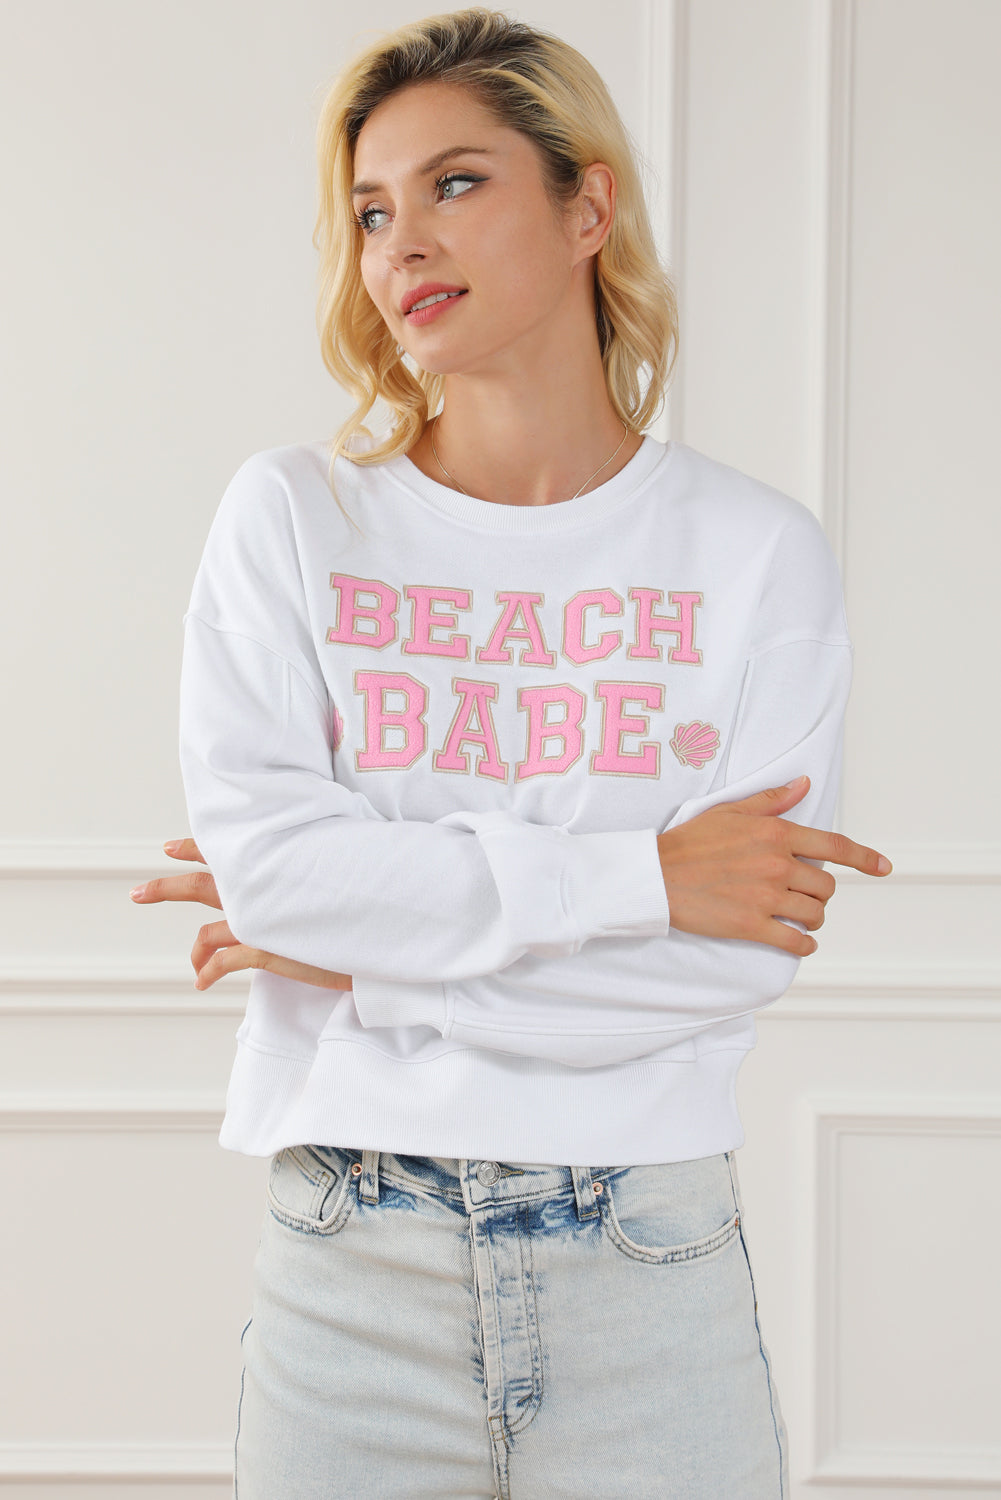 Bela pulover za prosti čas s sloganom BEACH BABE